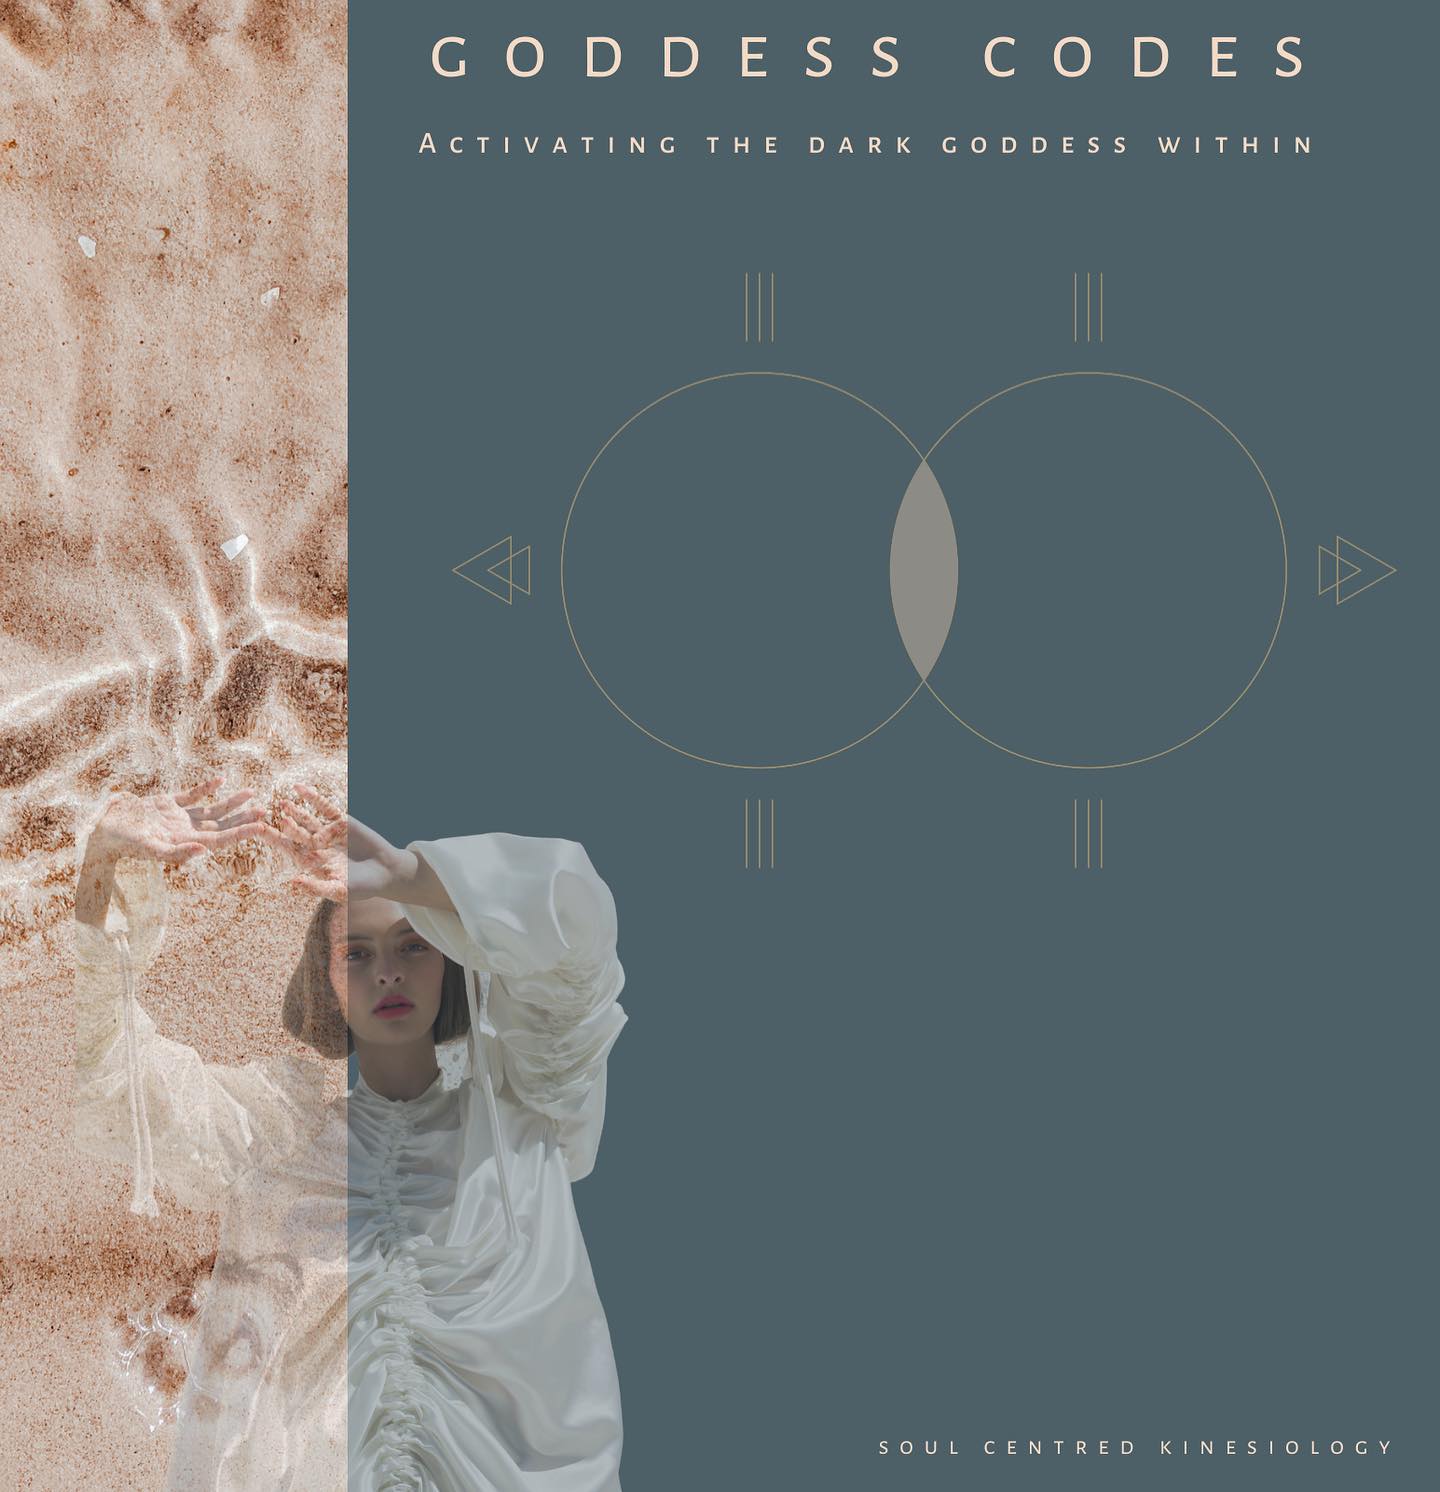 Goddess Codes Invitation